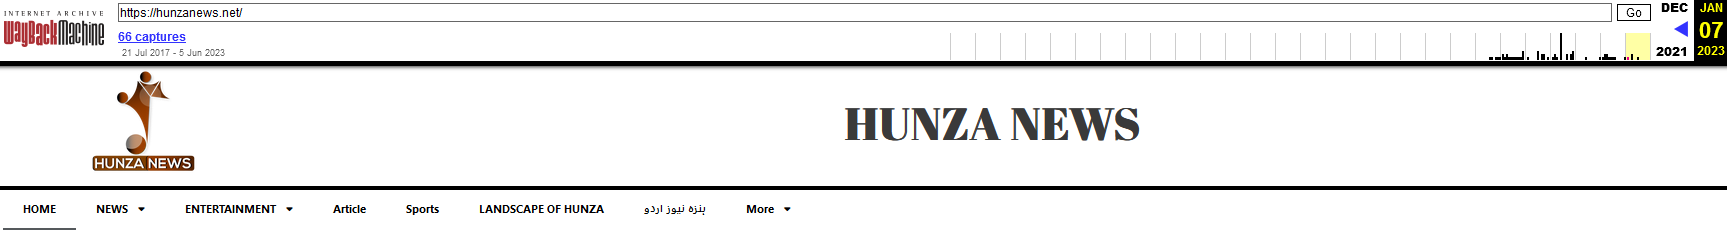 Figur 4 Hunza News redesign download-appen uden mulighed